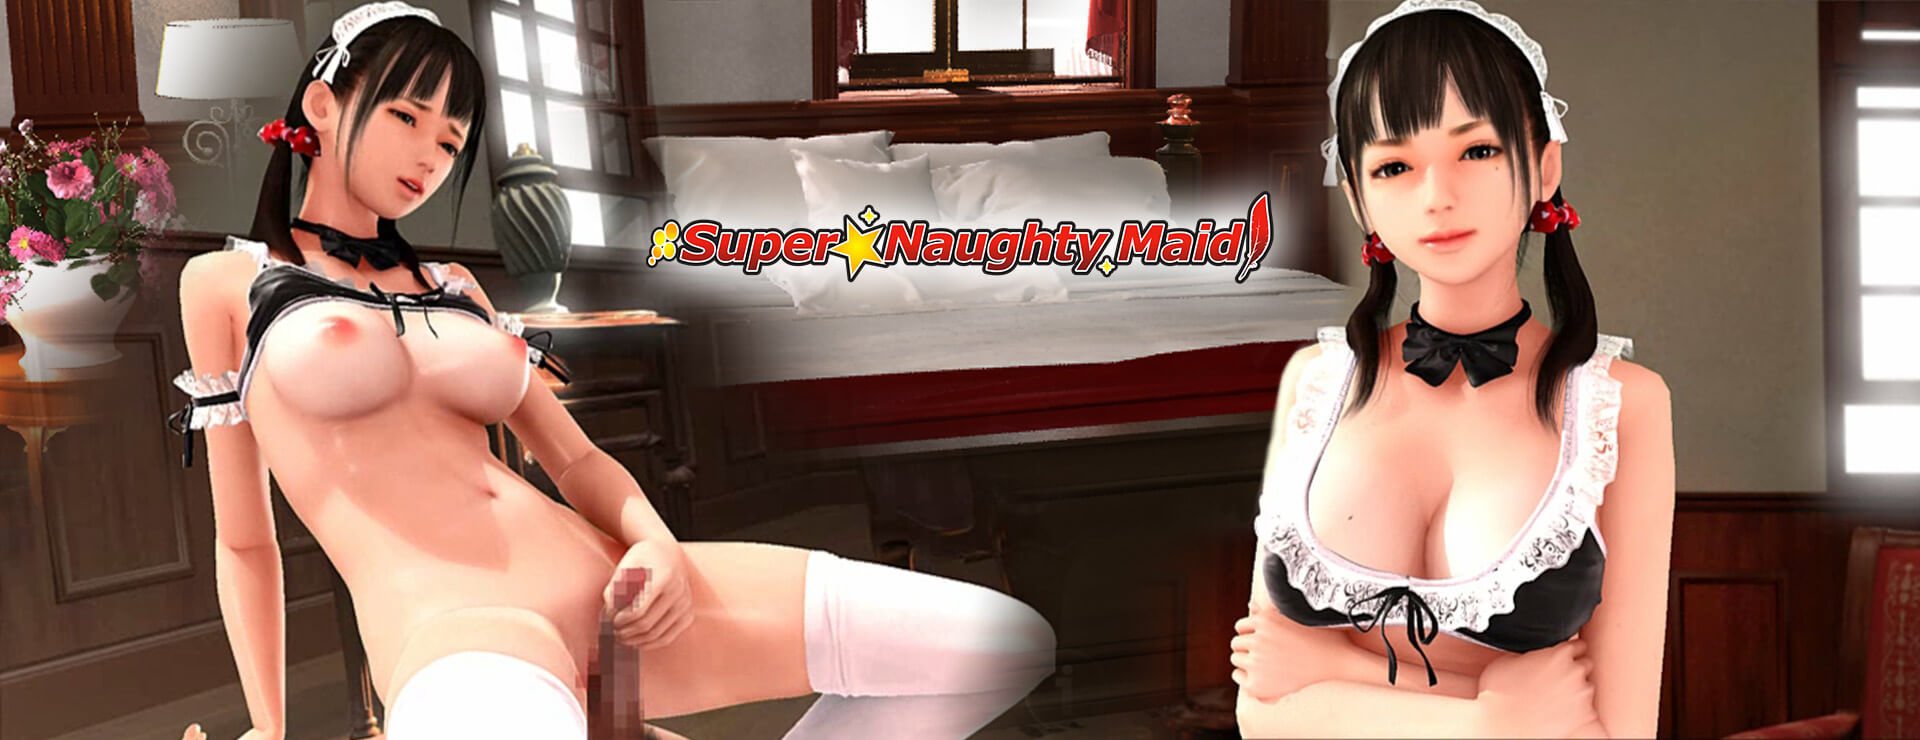 Super Naughty Maid 1 - Simulación Juego